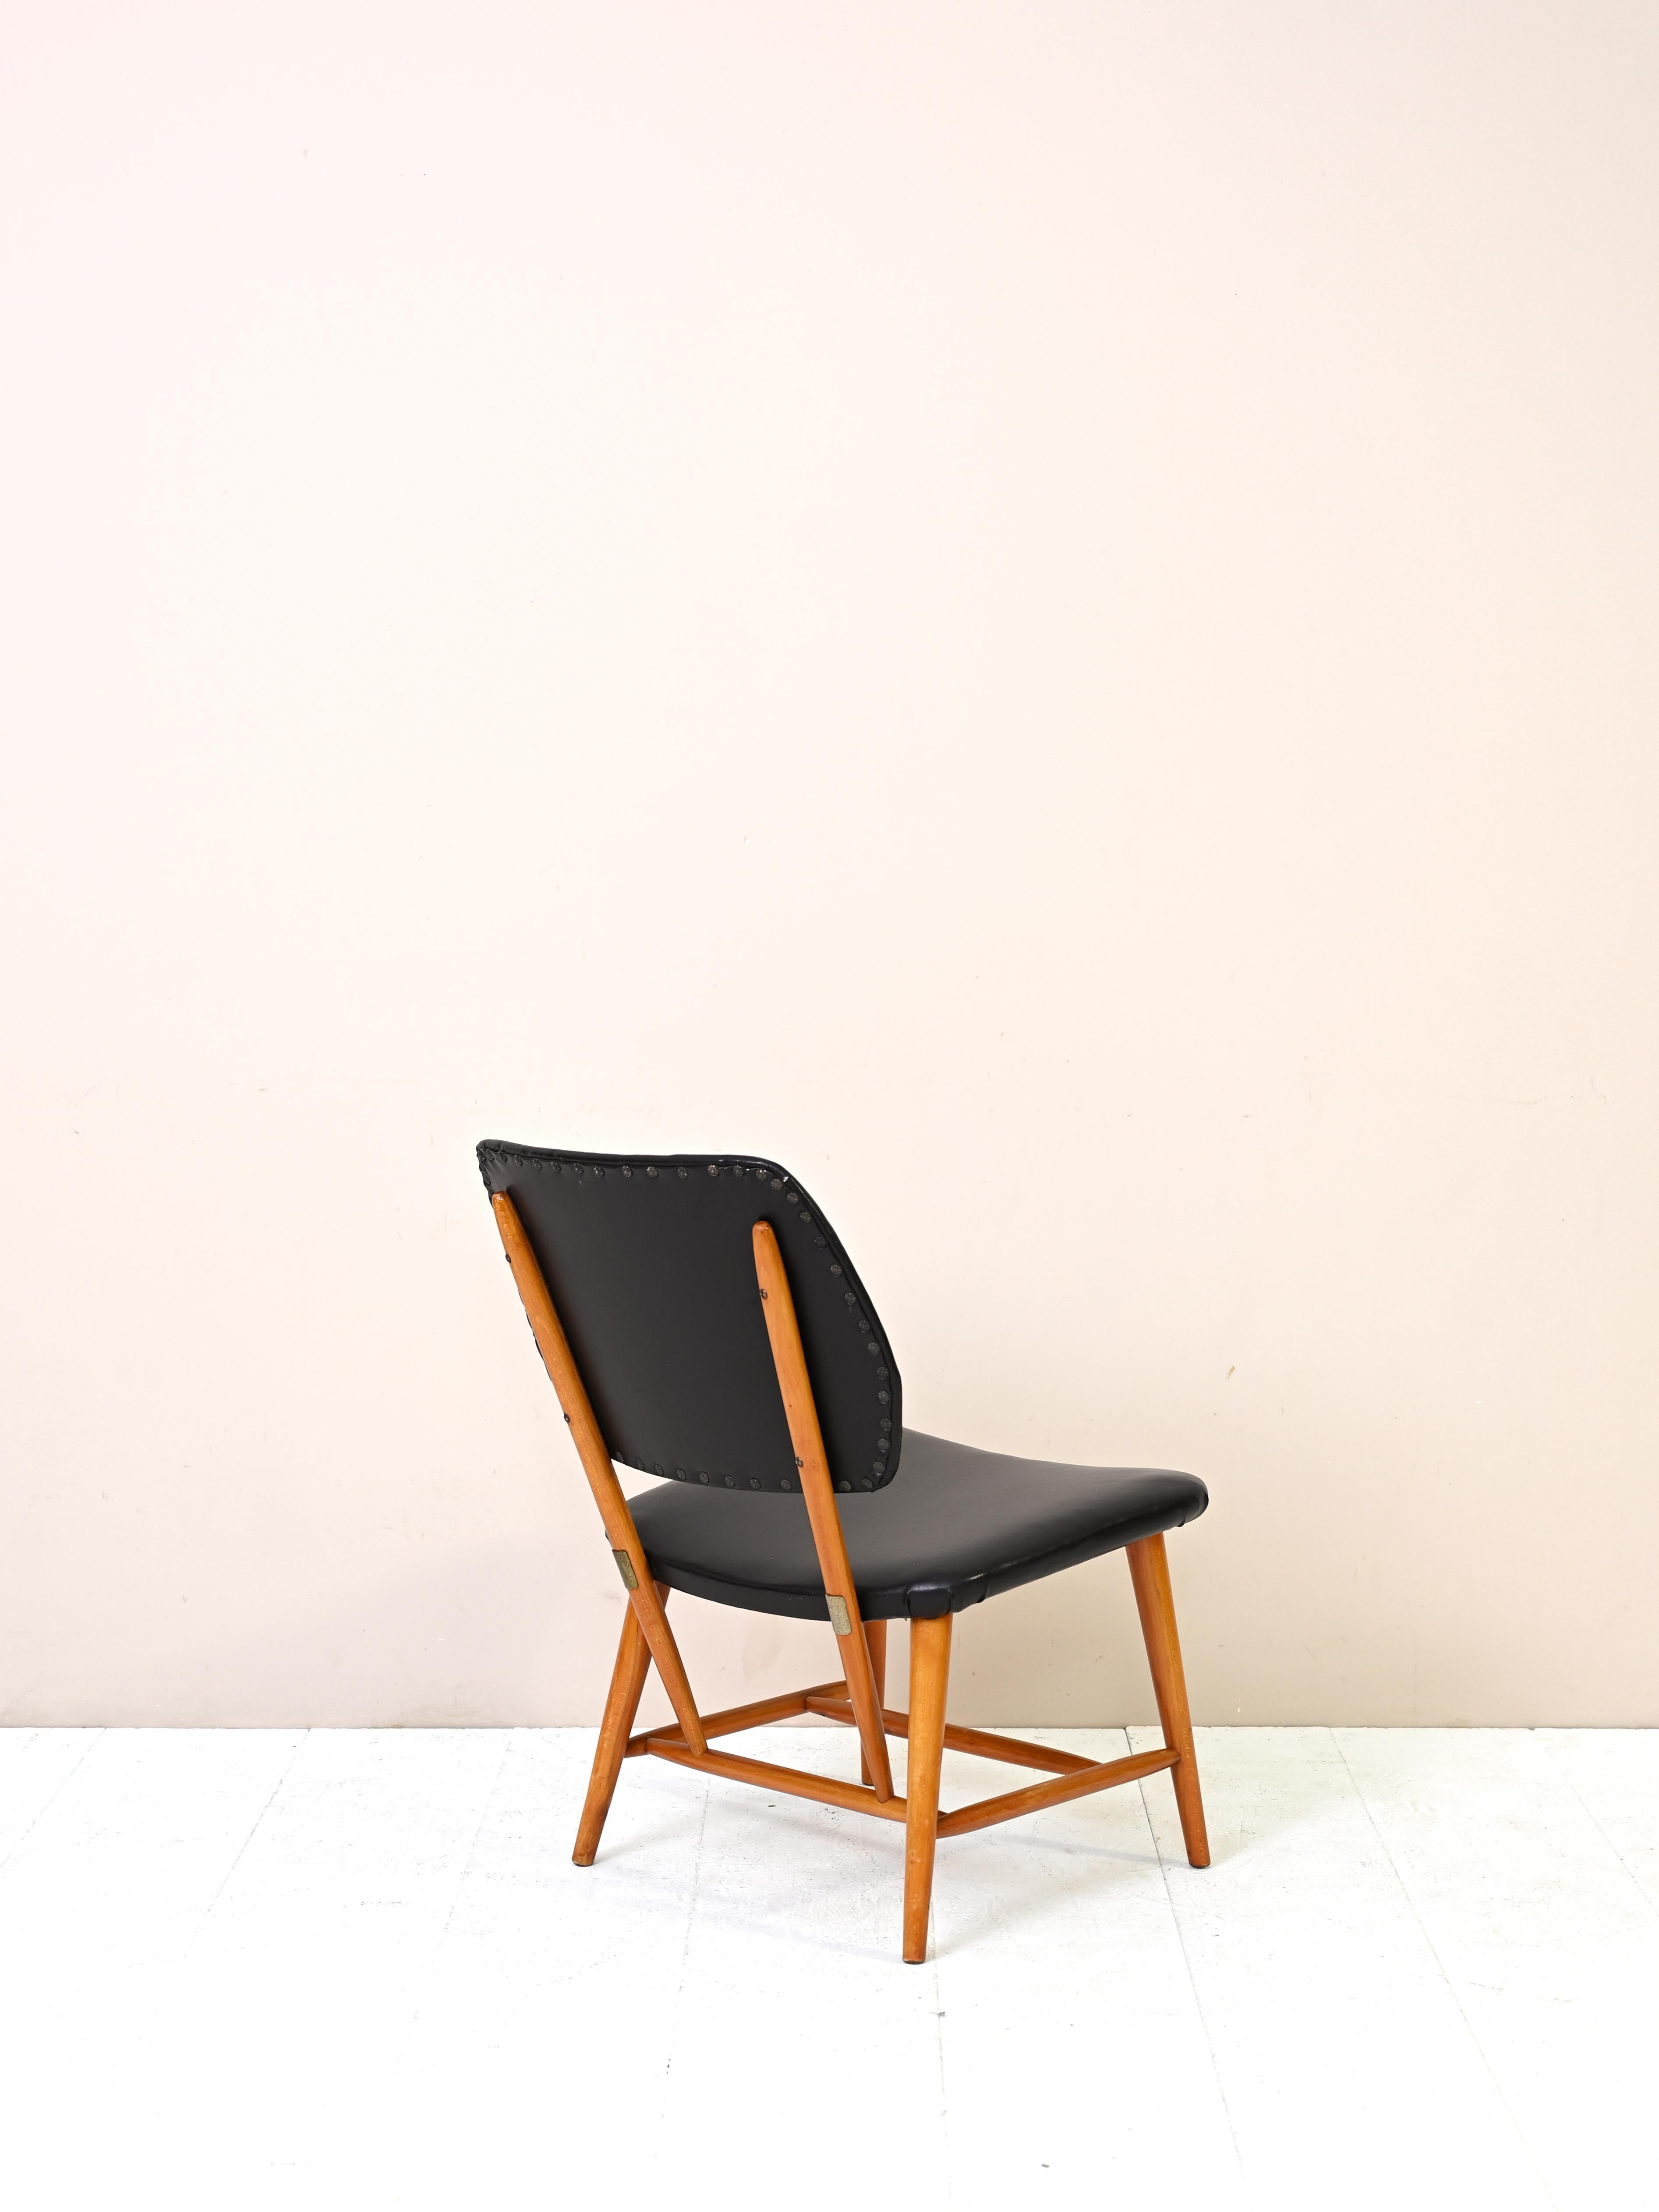 Chaise en bois et cuir de fabrication originale scandinave vintage des années 1950.

Cette chaise confortable et d'une beauté intemporelle peut être placée dans le salon ou la chambre à coucher et donnera à la pièce une touche nordique et